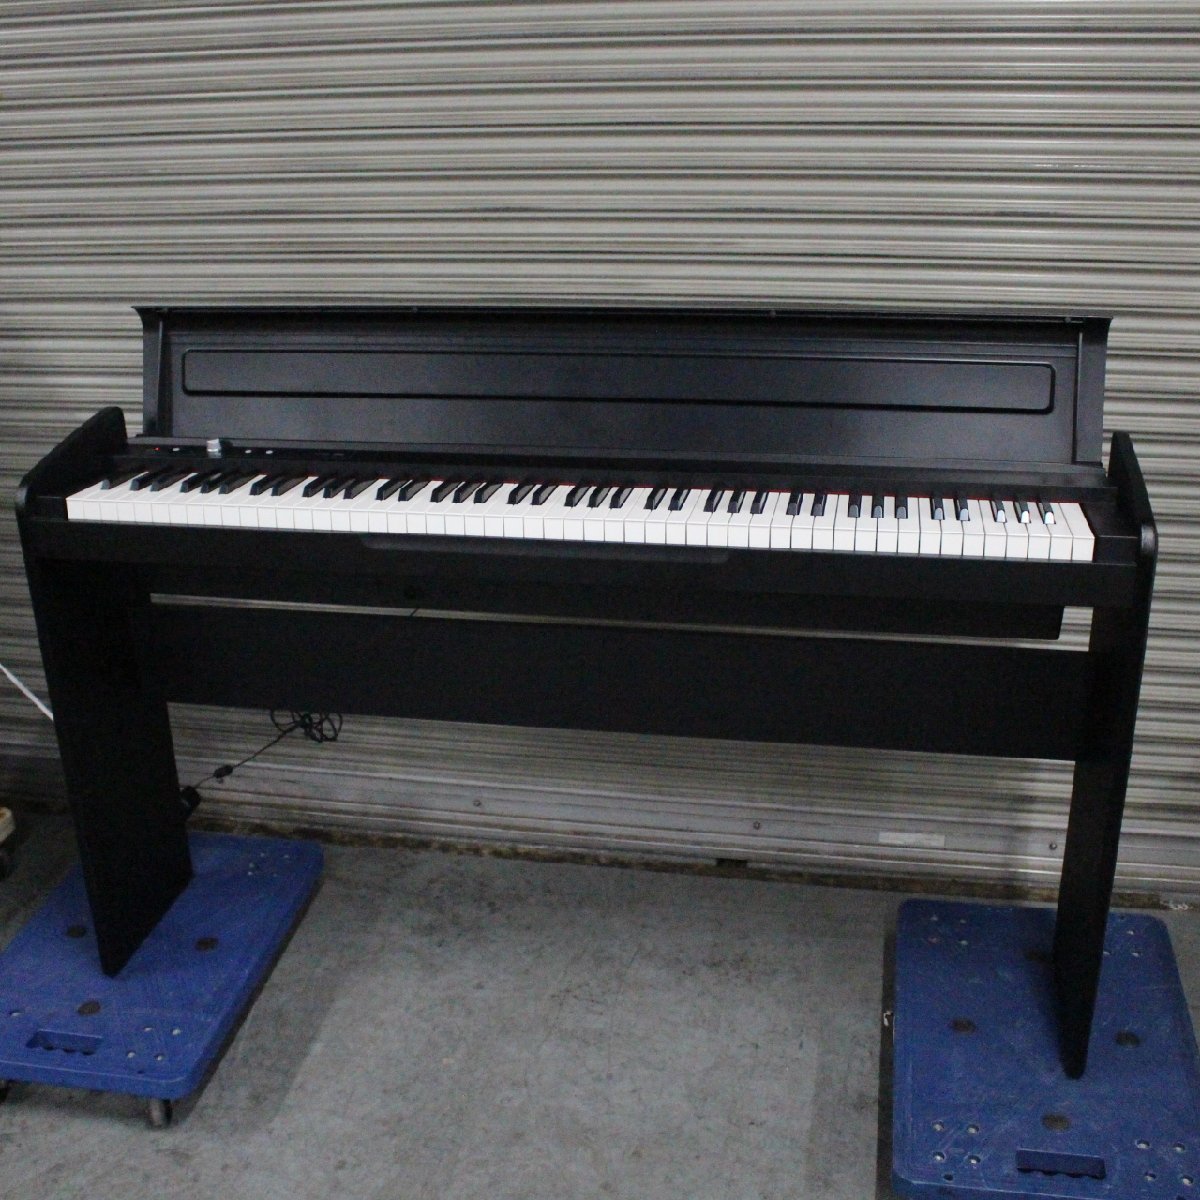 東京都稲城市にて KORG 電子ピアノ LP-180 2018年製 を出張買取させて頂きました。